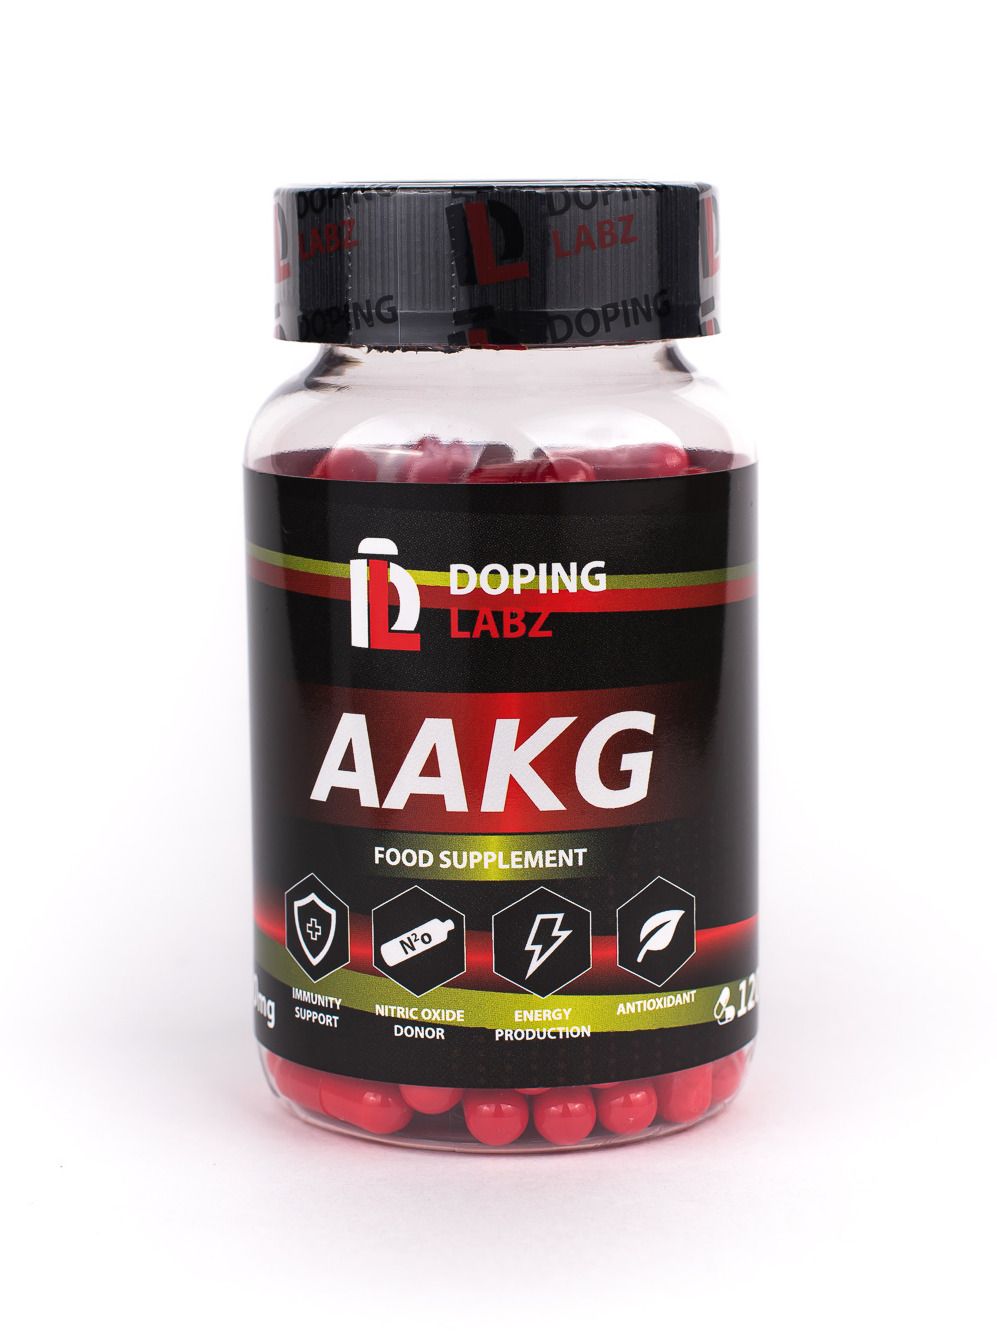 Аргинин Альфа-кетоглутарат (AAKG). AAKG спортивное питание. Аминокислотный комплекс Академия-т VINITRO L-Arginin+Vinitrox. AAKG 2 1 это допинг ?.